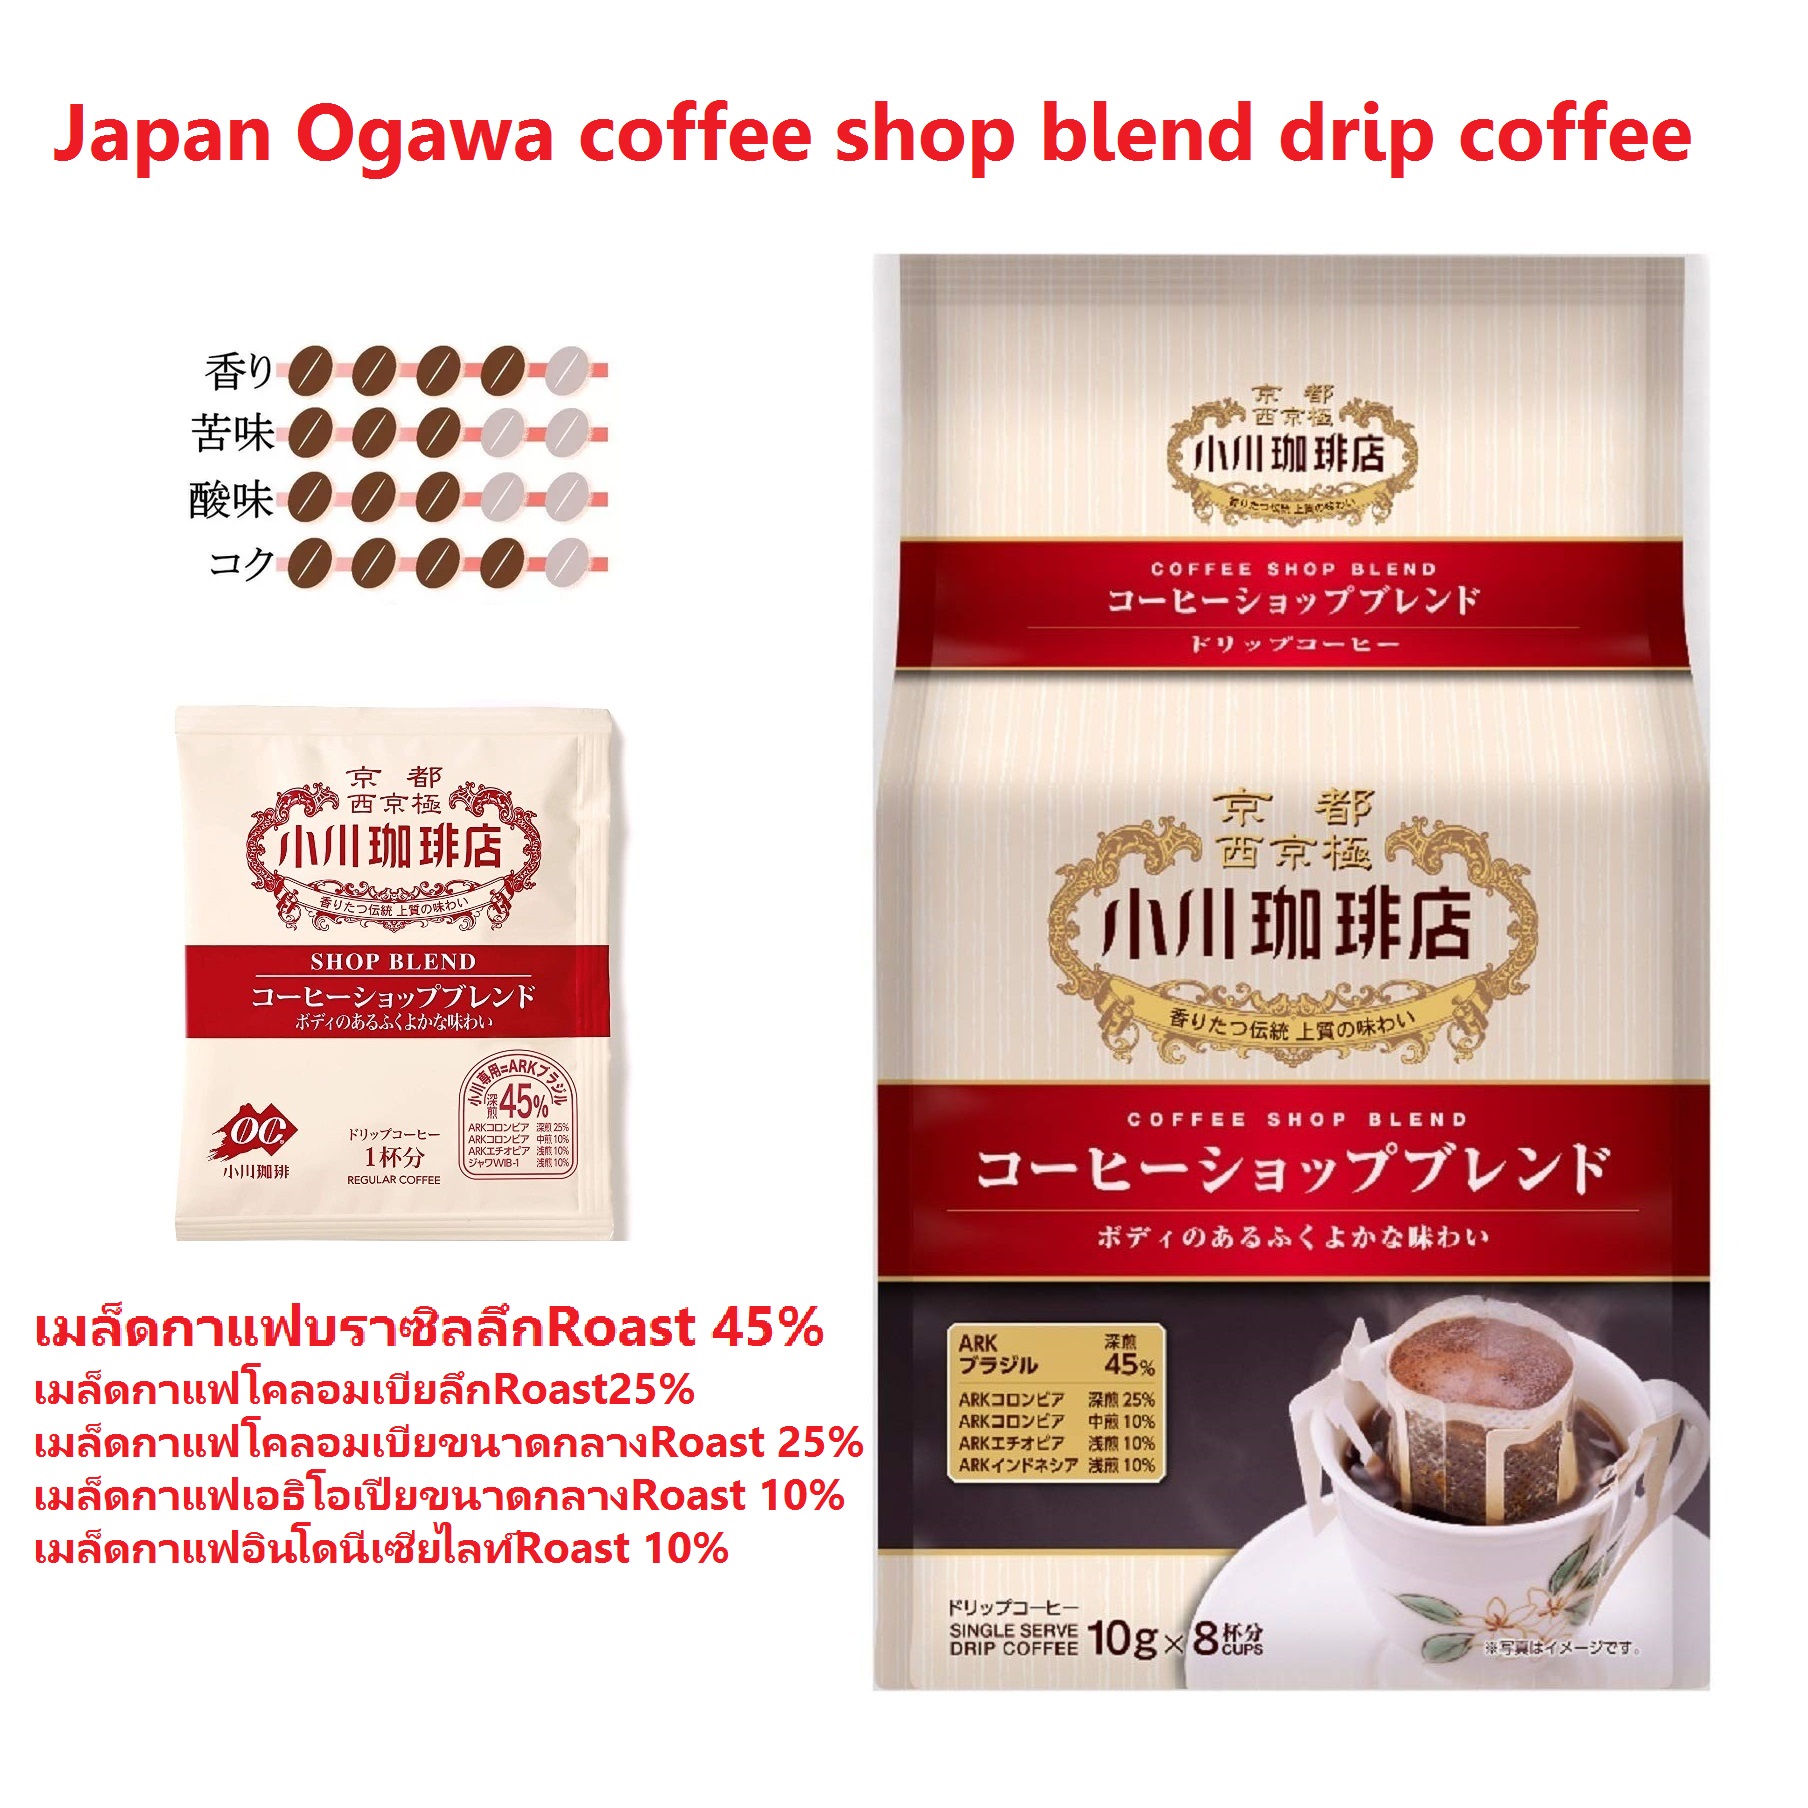 Japan Ogawa coffee shop blend drip coffee 8 ถ้วย x 10 กรัม  ร้านกาแฟญี่ปุ่น Ogawa ผสมผสานกาแฟดริป